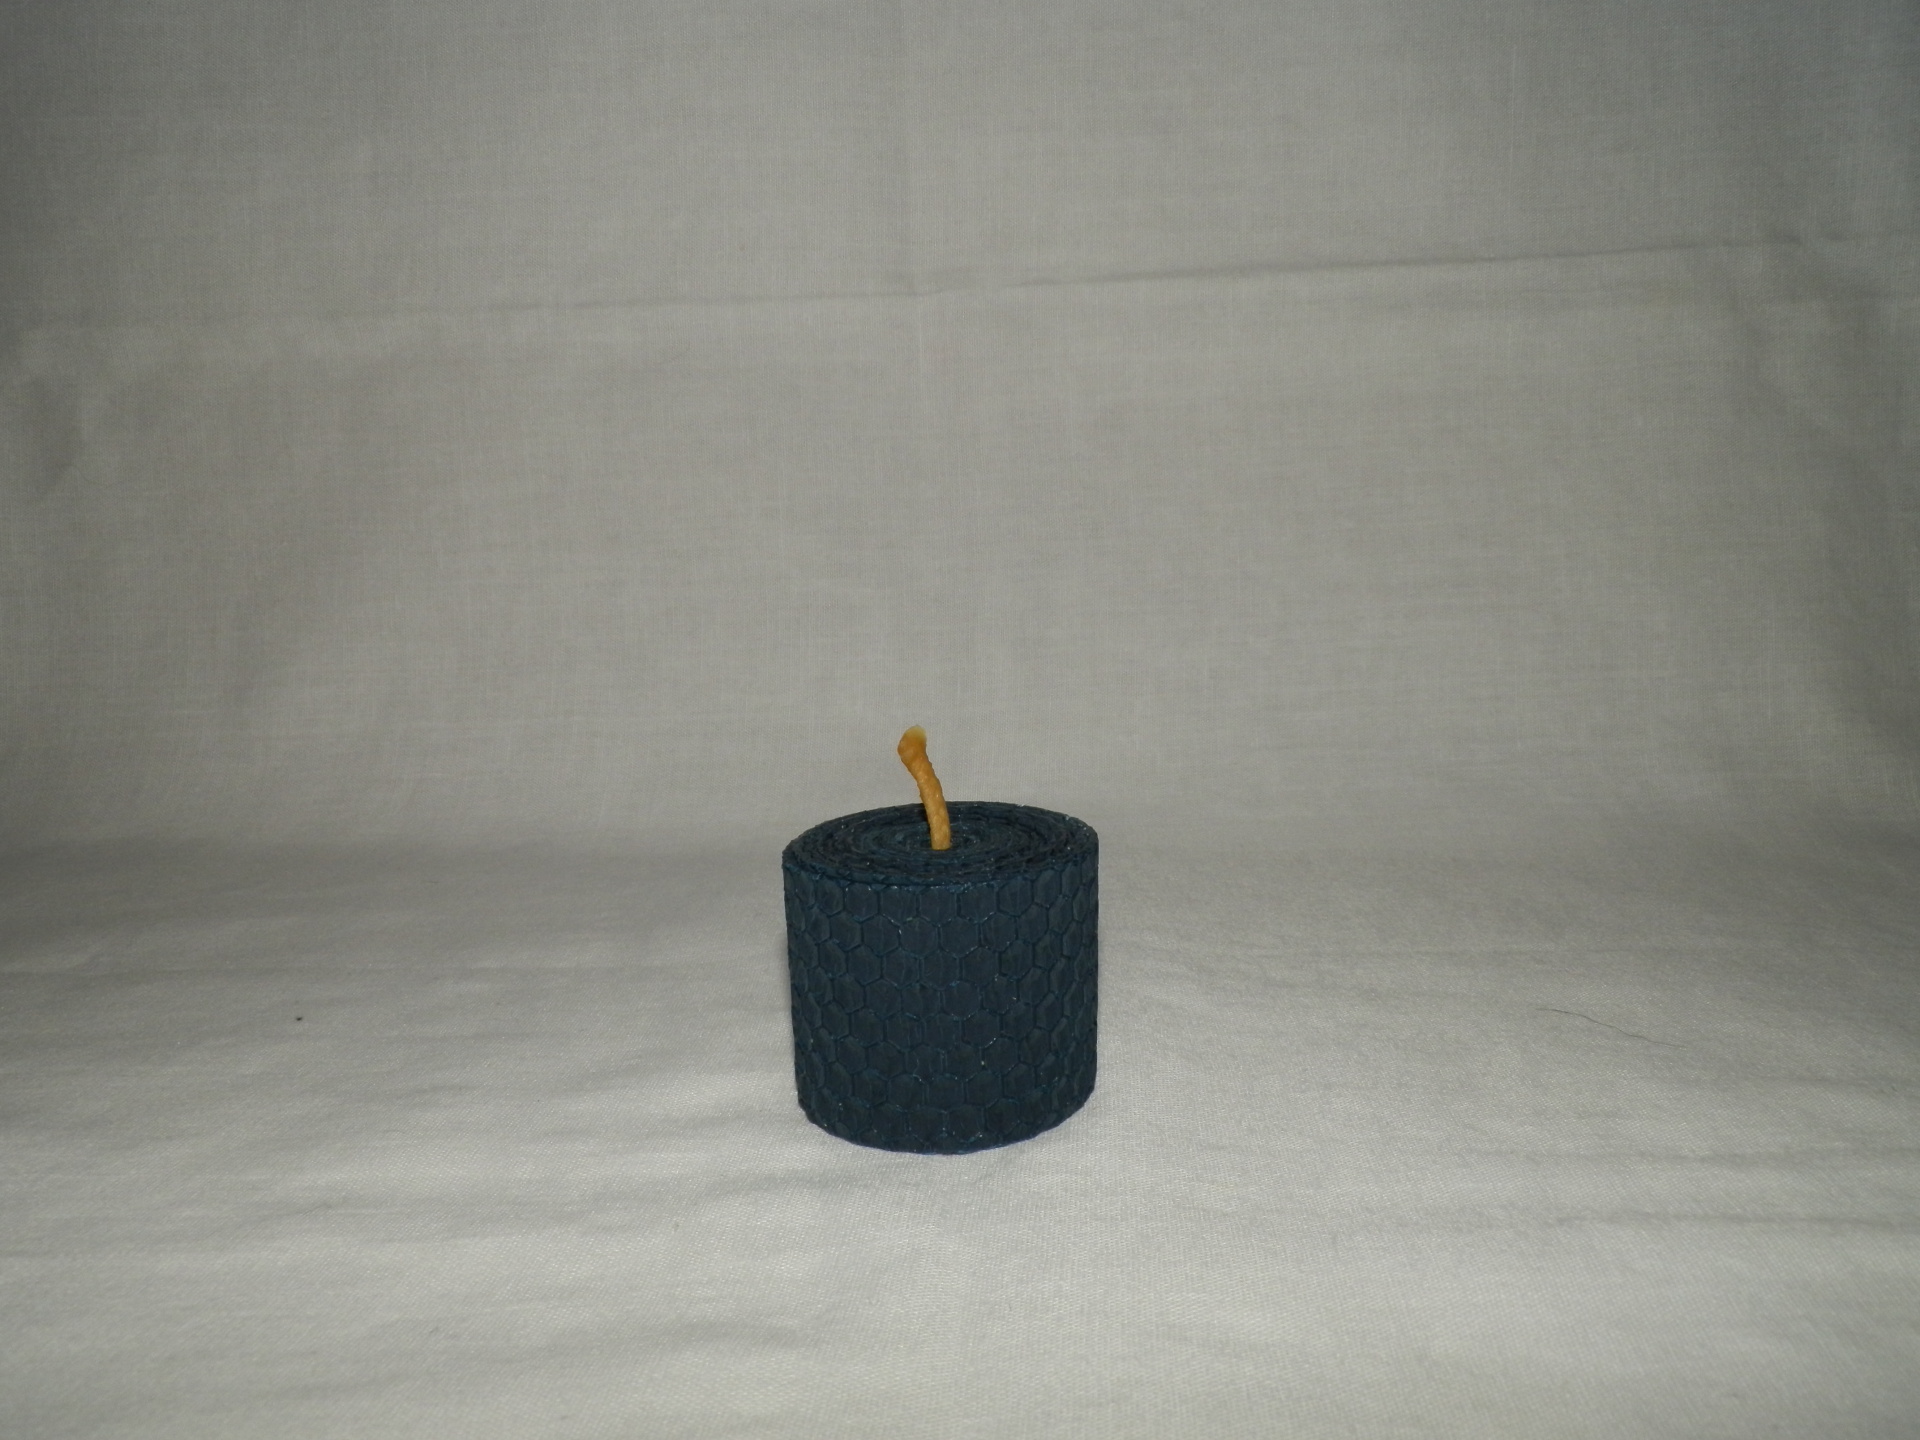 Farebná vosková sviečka - valec 4 x 5 cm - č.E1